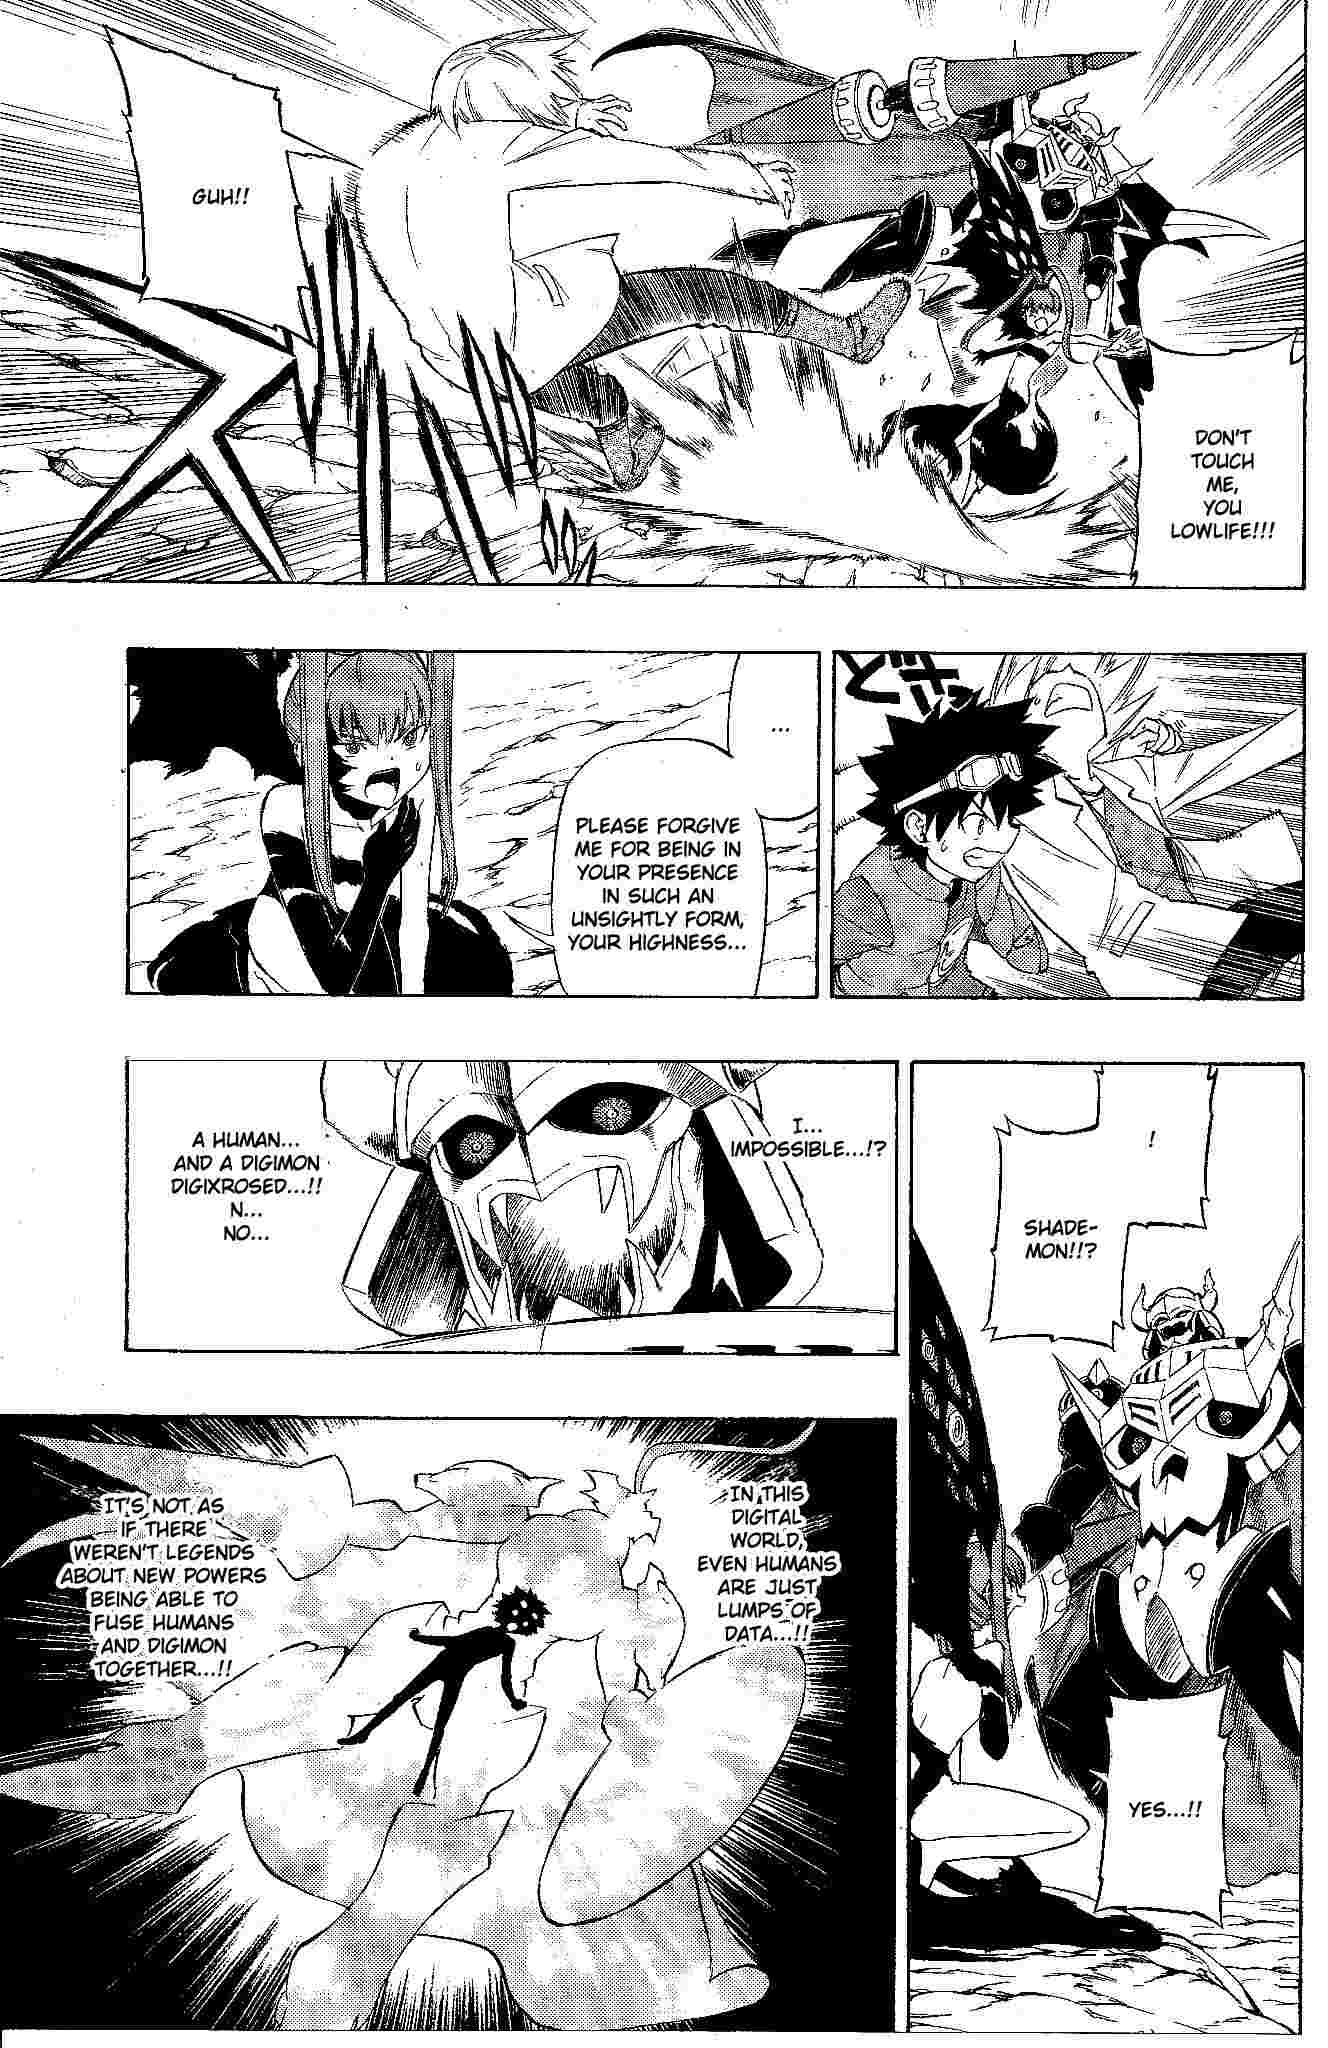 [Manga] "Digimon V-tamers"  - Page 2 2210